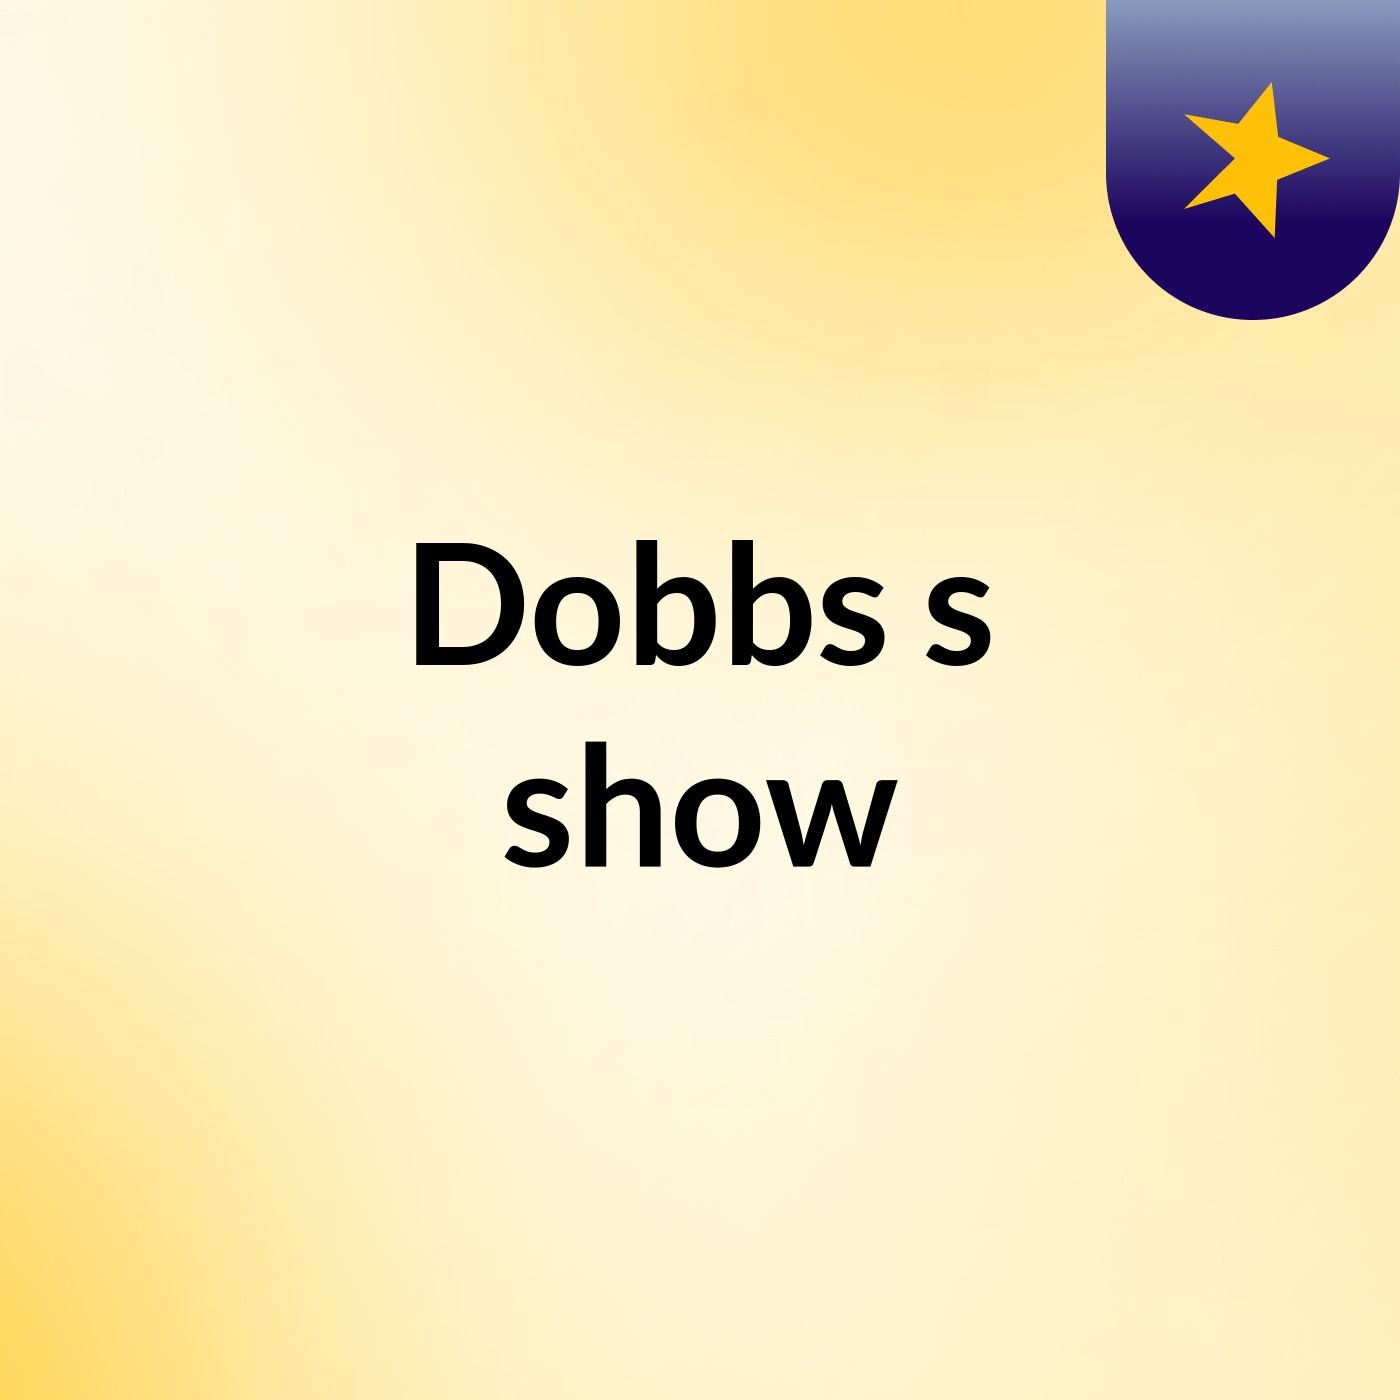 Dobbs's show